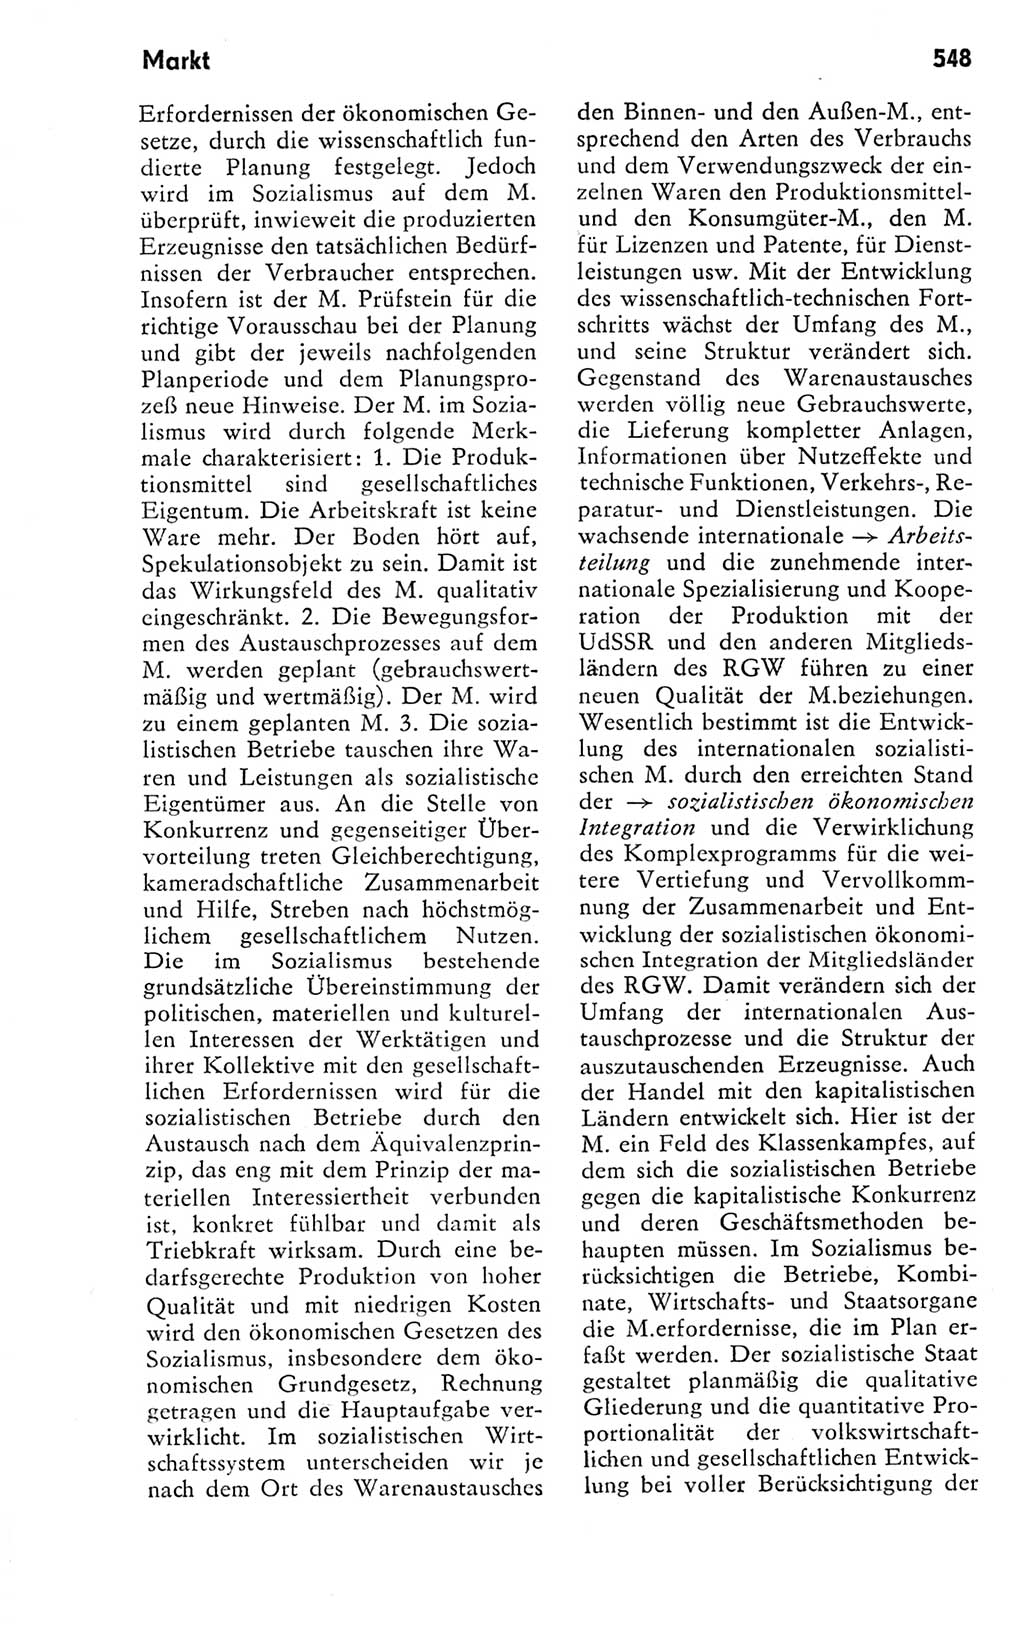 Kleines politisches Wörterbuch [Deutsche Demokratische Republik (DDR)] 1978, Seite 548 (Kl. pol. Wb. DDR 1978, S. 548)